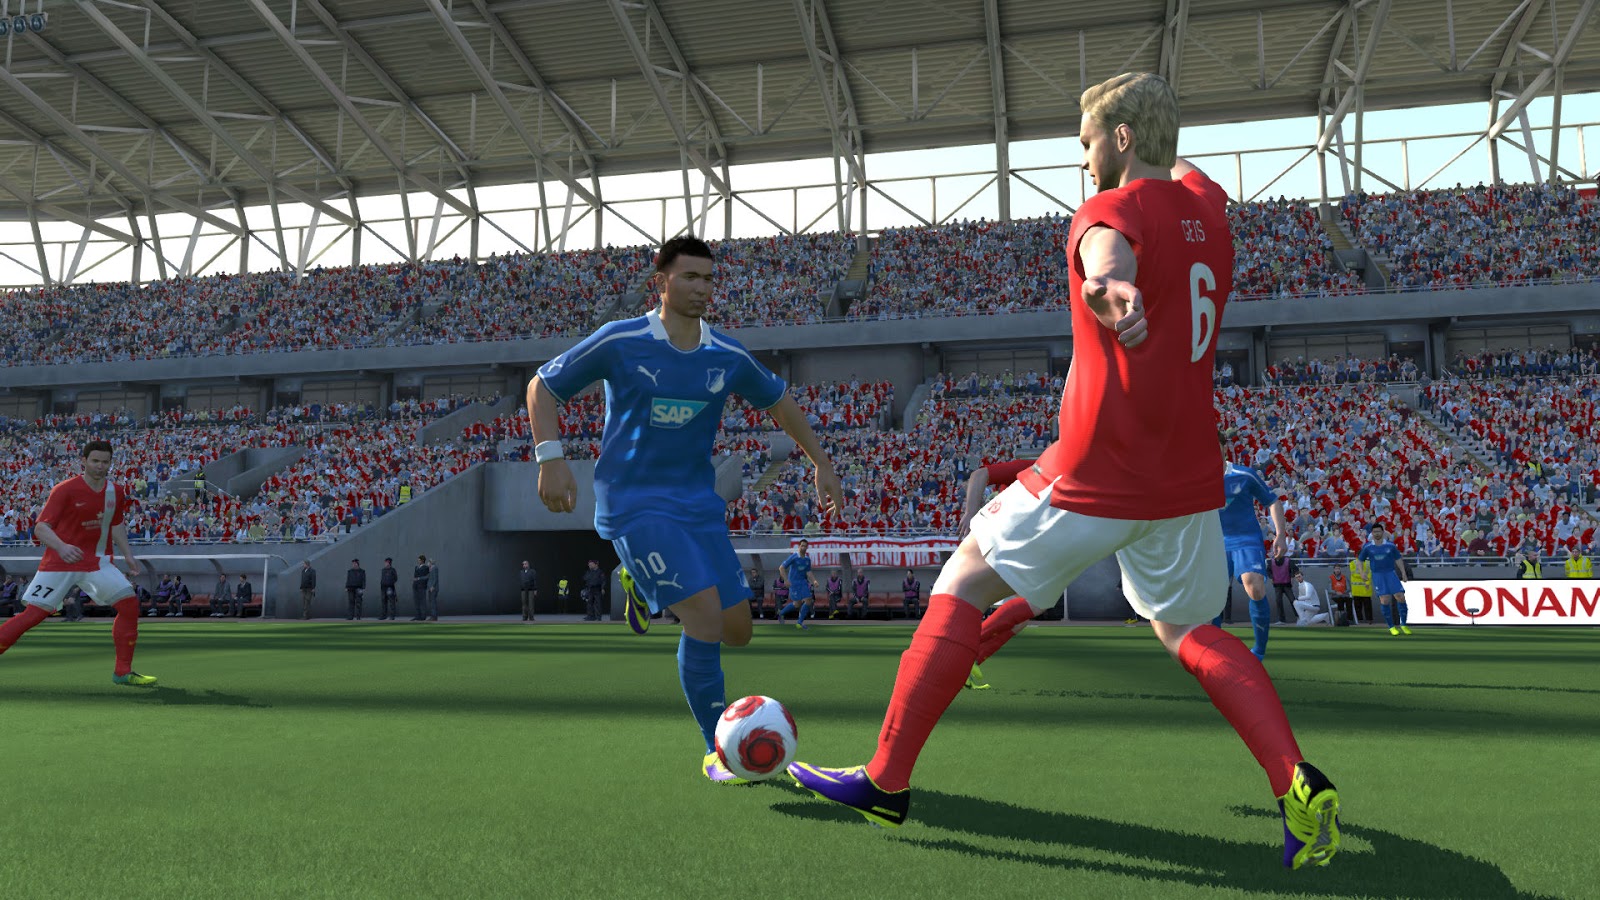 Pro Evolution Soccer 4 Pc Patch V1.1